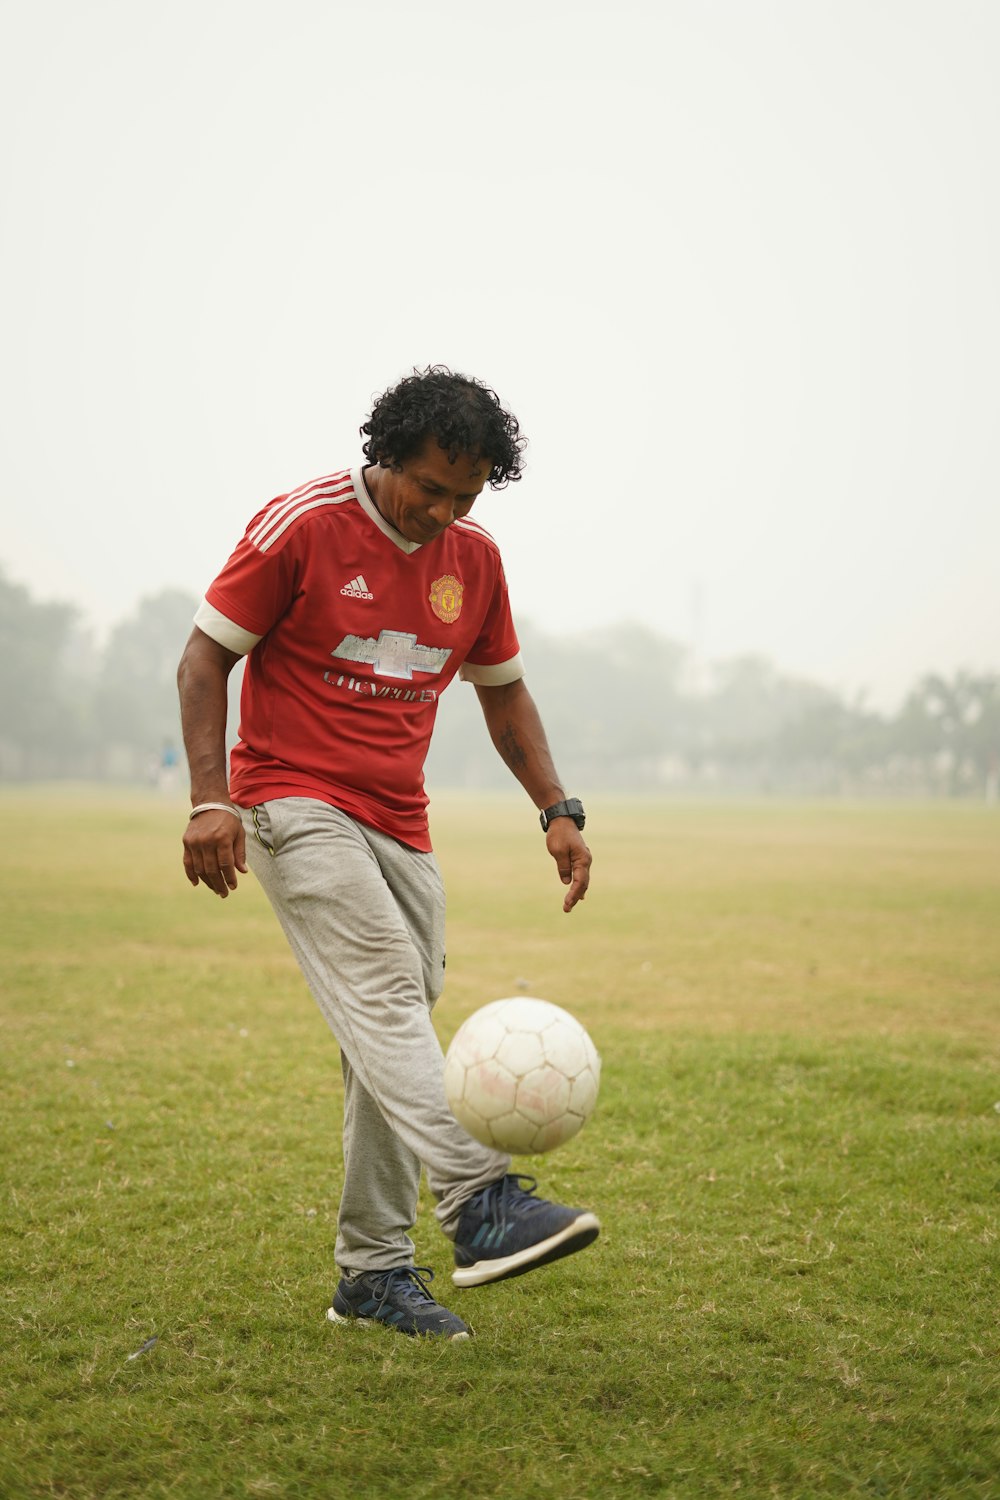 Foto de hombre con camiseta de fútbol roja y blanca pateando una pelota de  fútbol en un campo de hierba verde durante el día – Imagen gratuita en  Unsplash